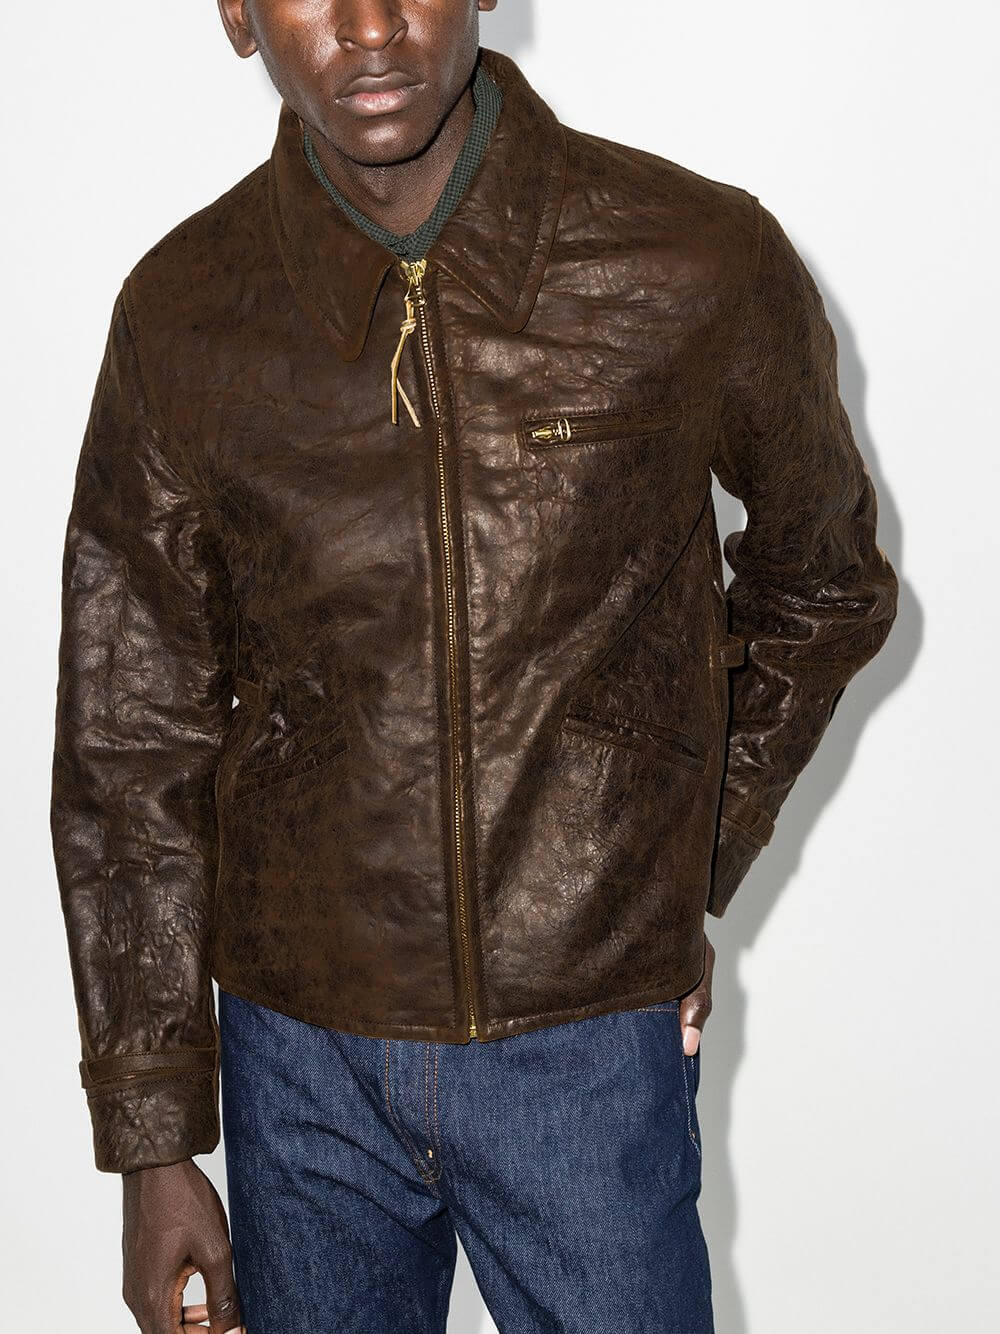 53.visvim garrison leather jacket